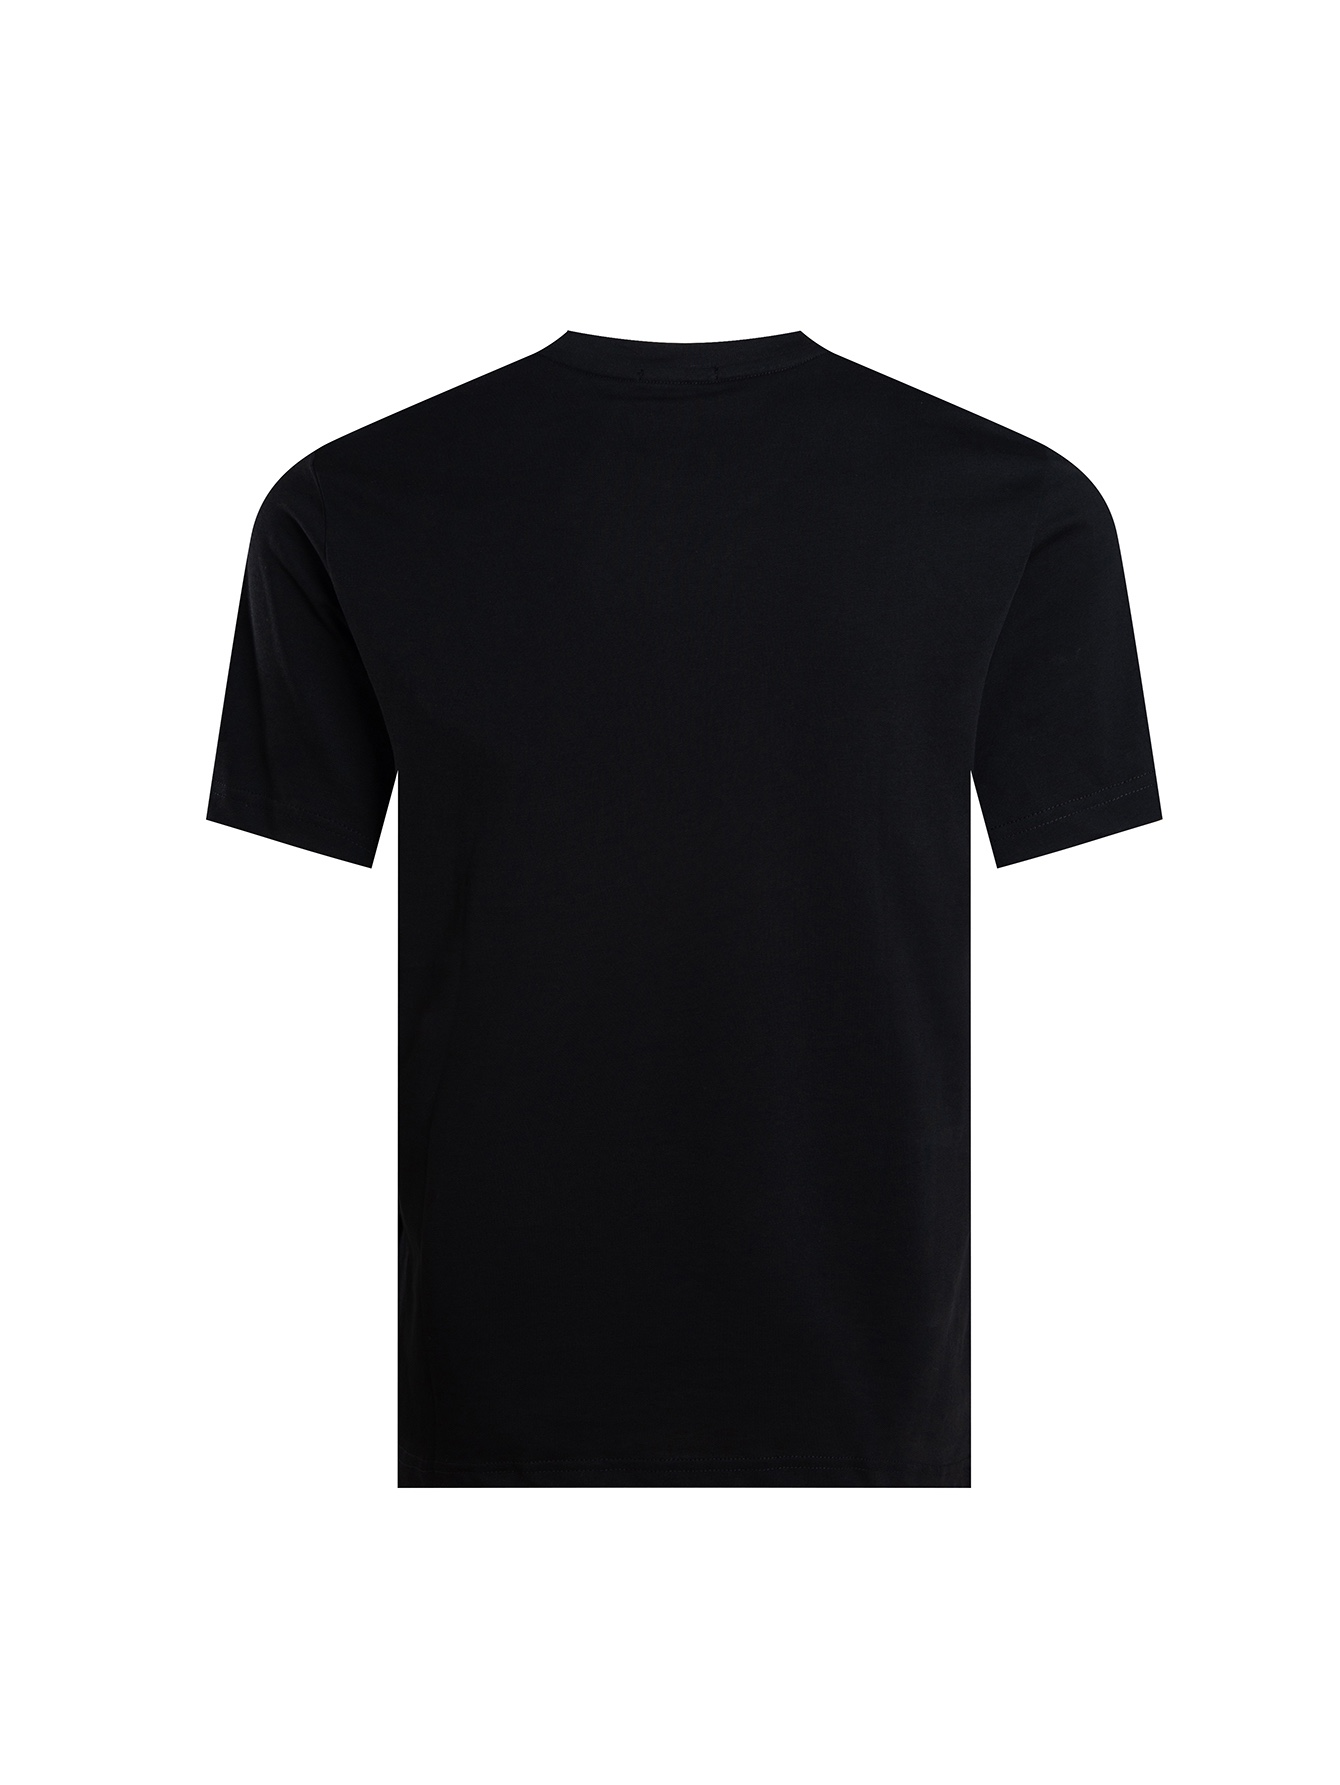 フェンディ ワイシャツスーパーコピー トップス 綿100% 短袖 Tシャツ 男女兼用 シンプル ファッション ブラック_2